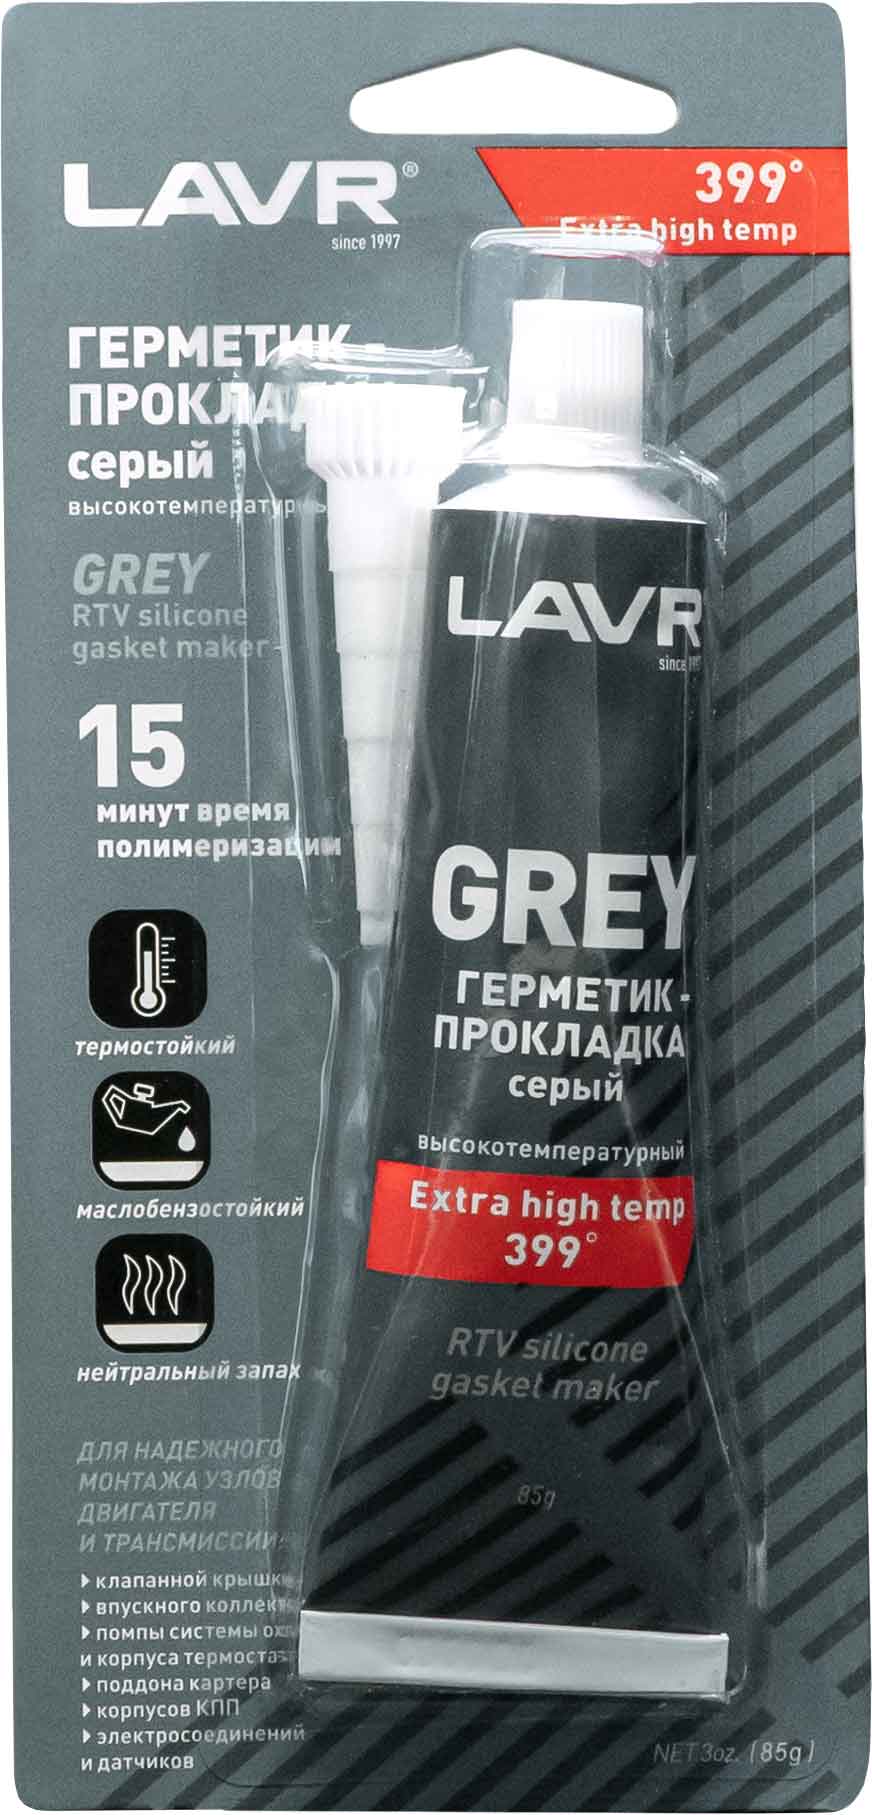 LN1739 герметик-прокладка серый окотемпературный GREY, 85г